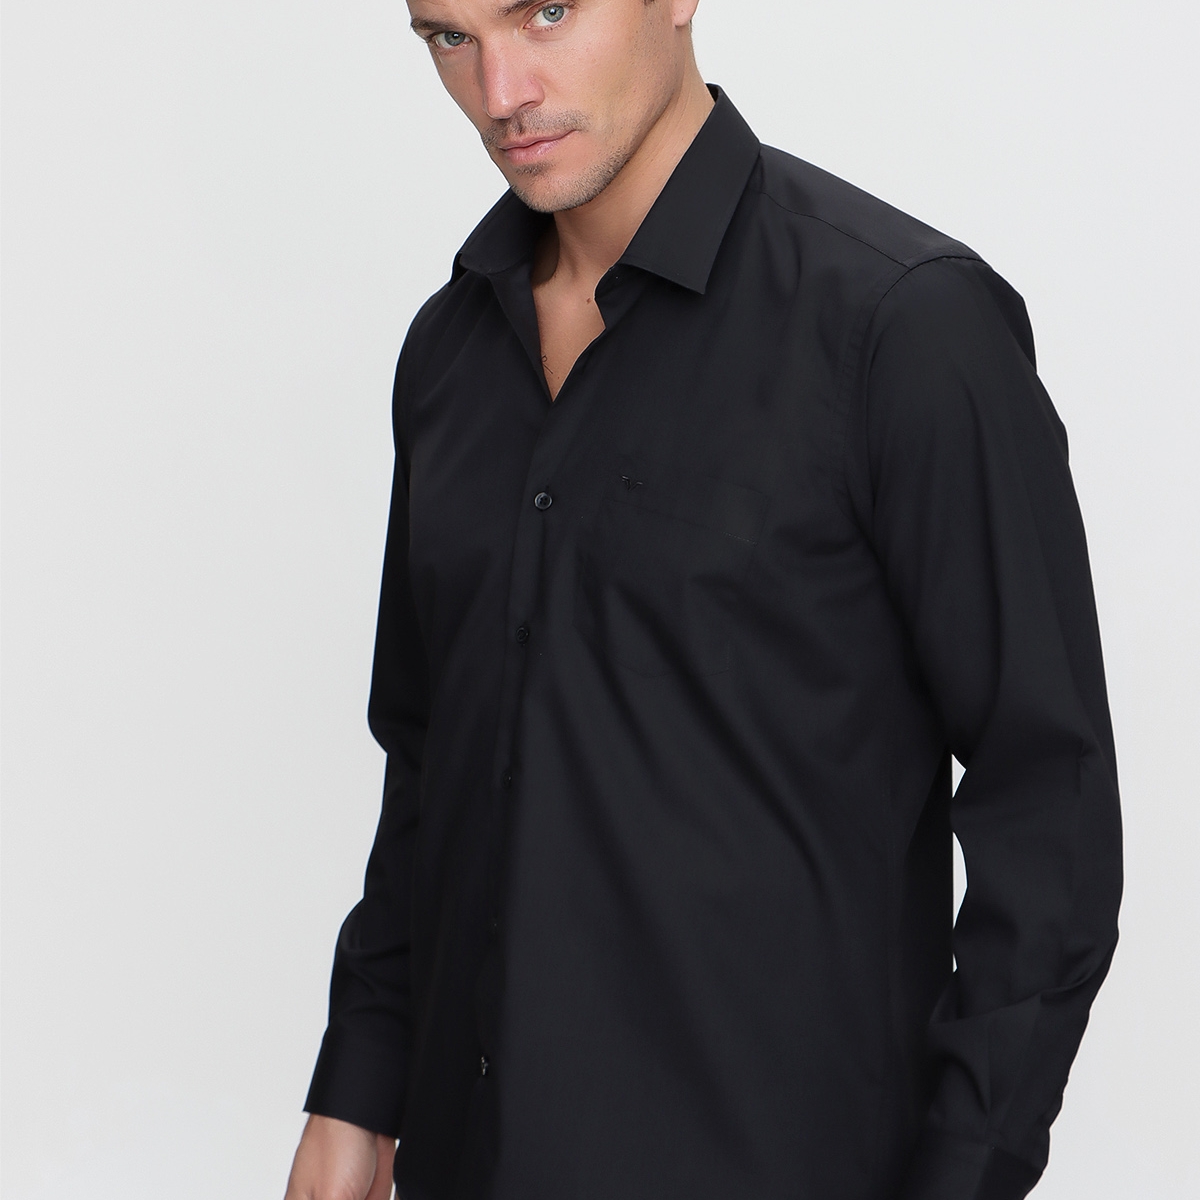 Flo Erkek Elegance Regular Fit Gömlek Siyah. 5